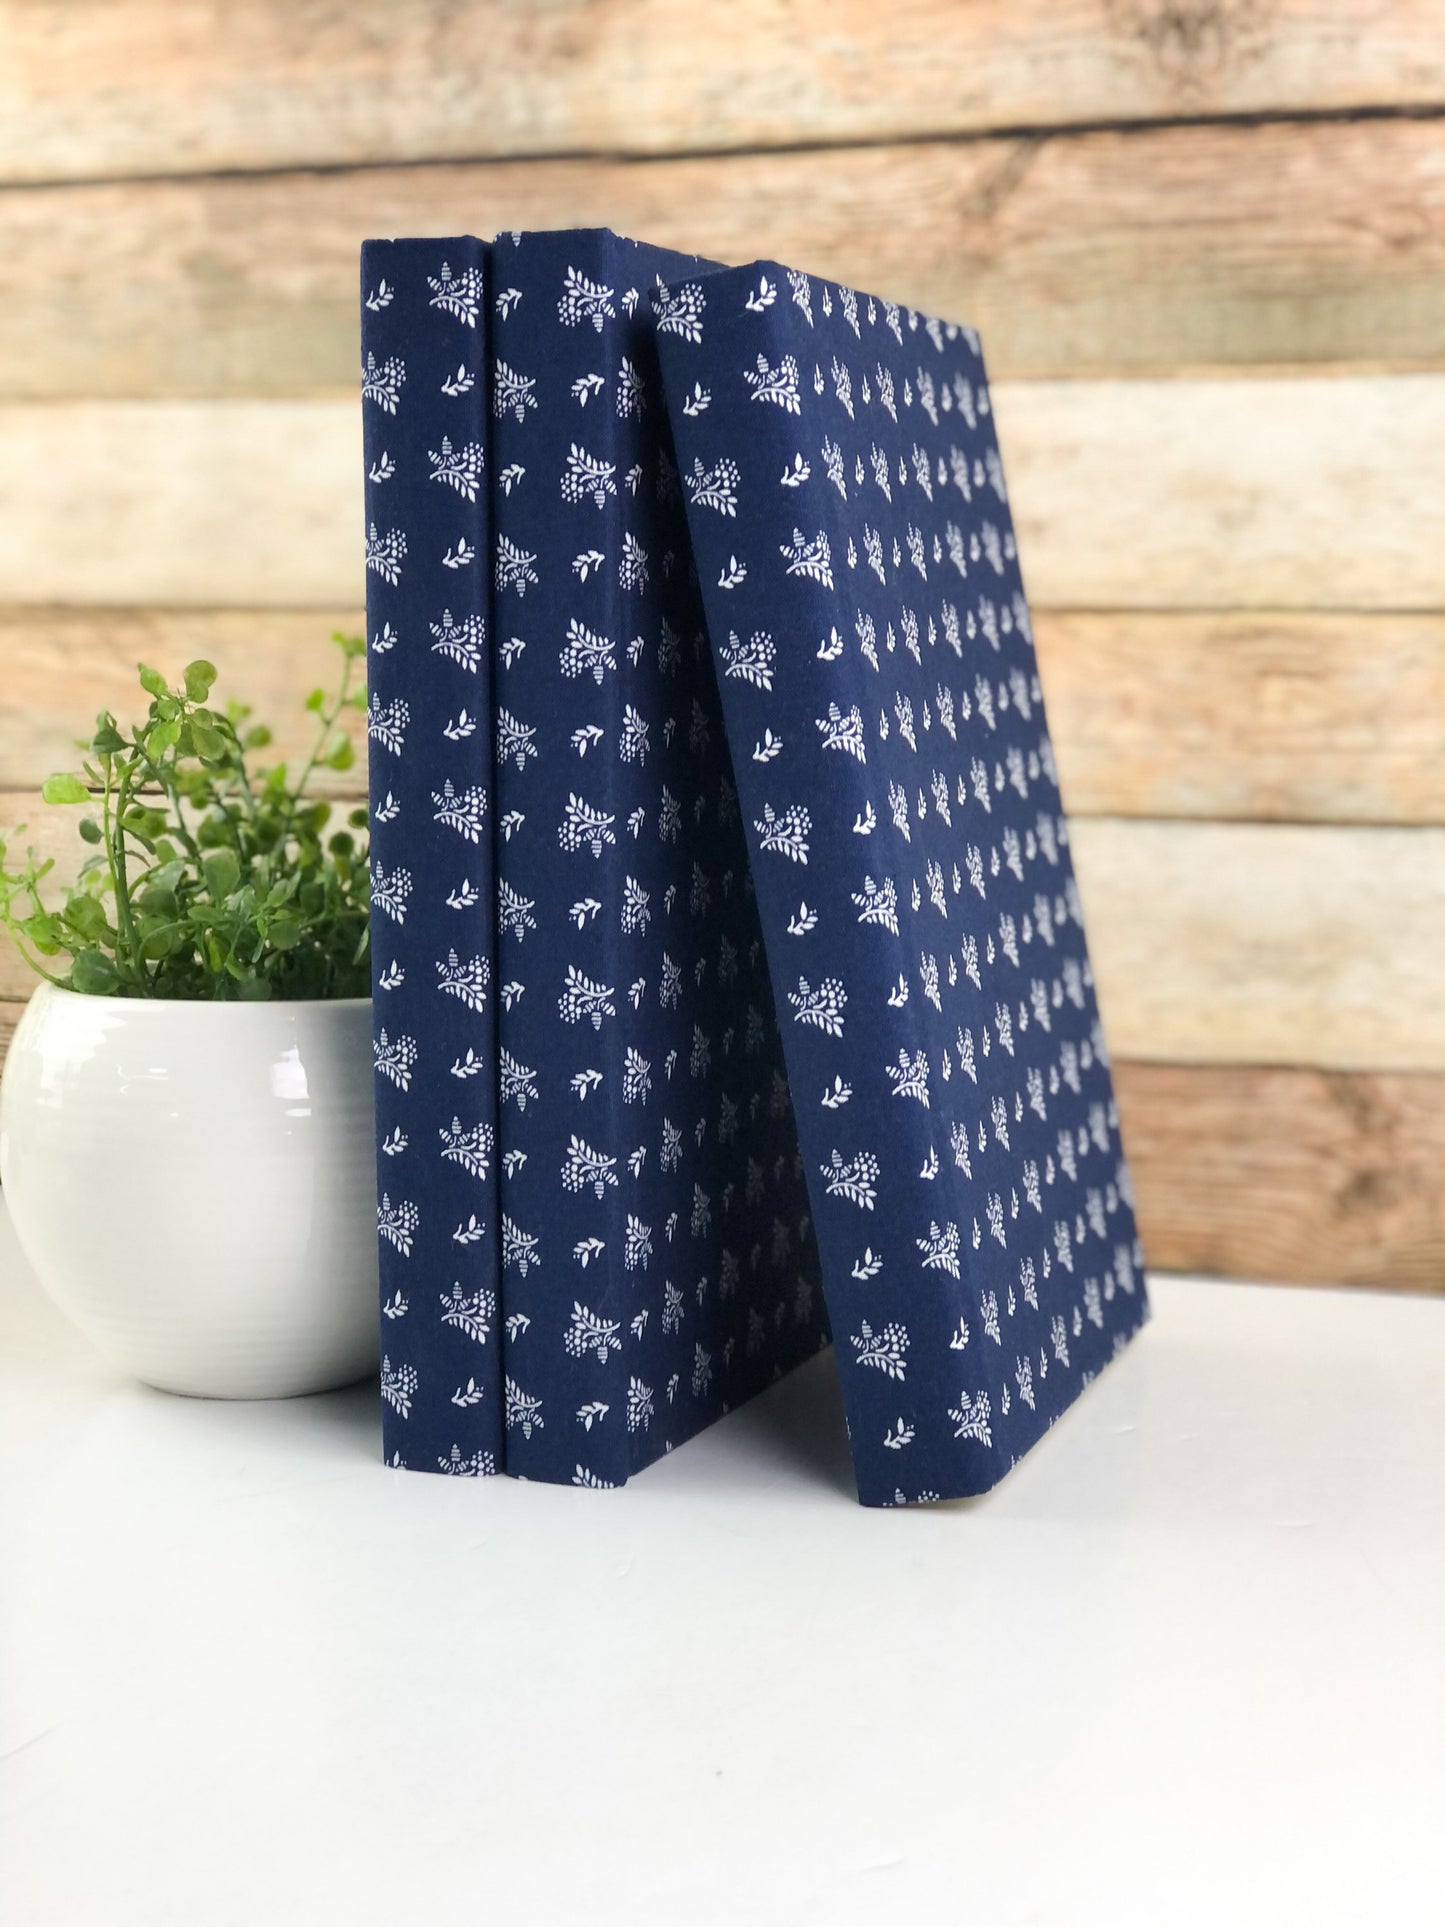 Navy Blue Fabric Covered Books for Shelf Decor / Set of 3 / Blue Decor